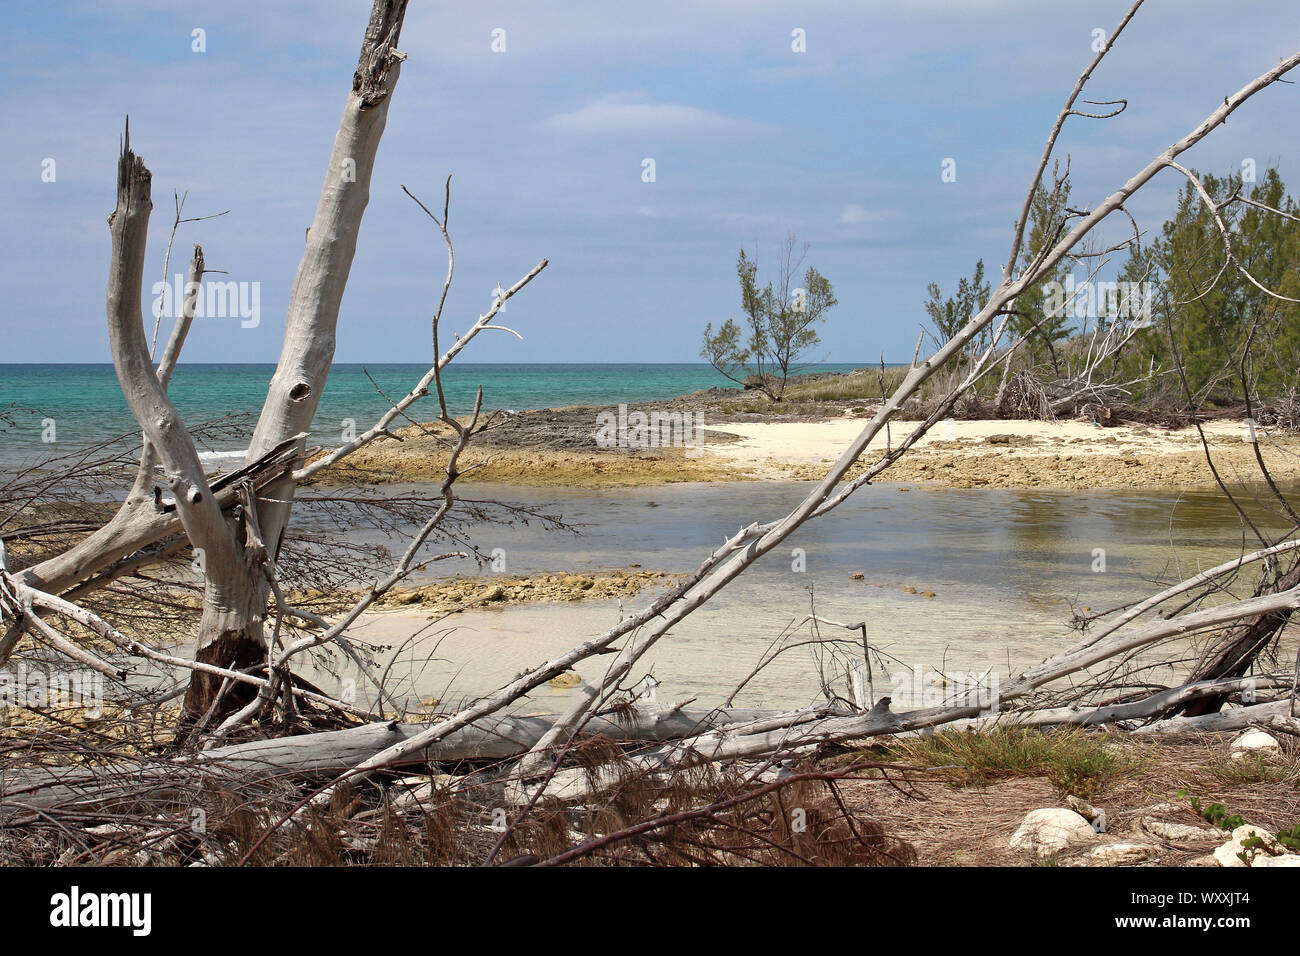 Una escena costera de una pequeña bahía en la costa sur de la isla de Gran Bahama todavía muestra signos de daños causados por huracanes anteriores antes de Dorian. Foto de stock